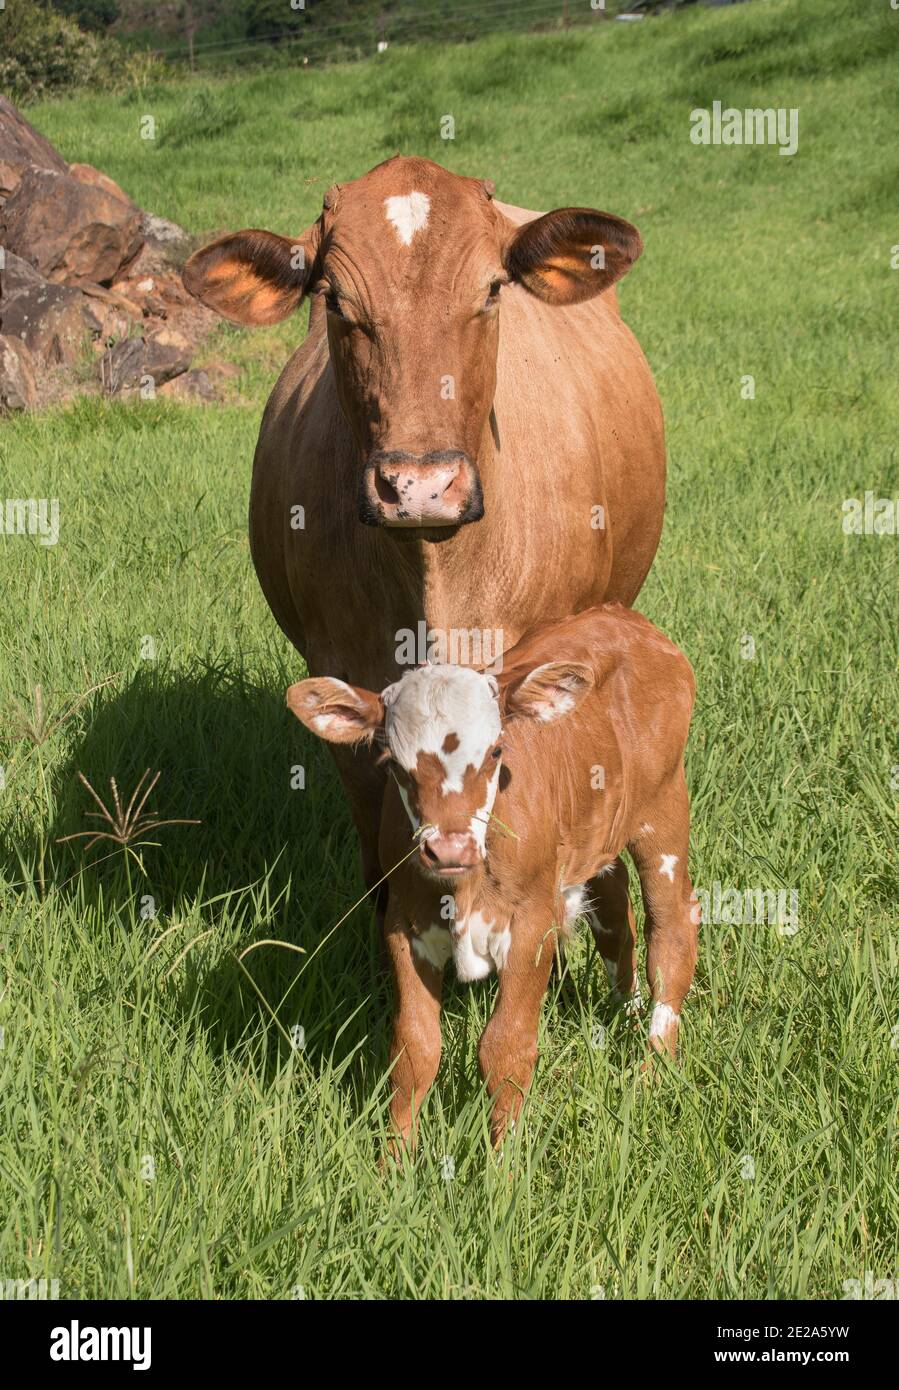 Braune und weiße Kuh mit ihrem neuen Kalb, das auf einem grünen Grasfeld steht. Beide blicken auf die Kamera. Summer, Queensland, Australien. Stockfoto